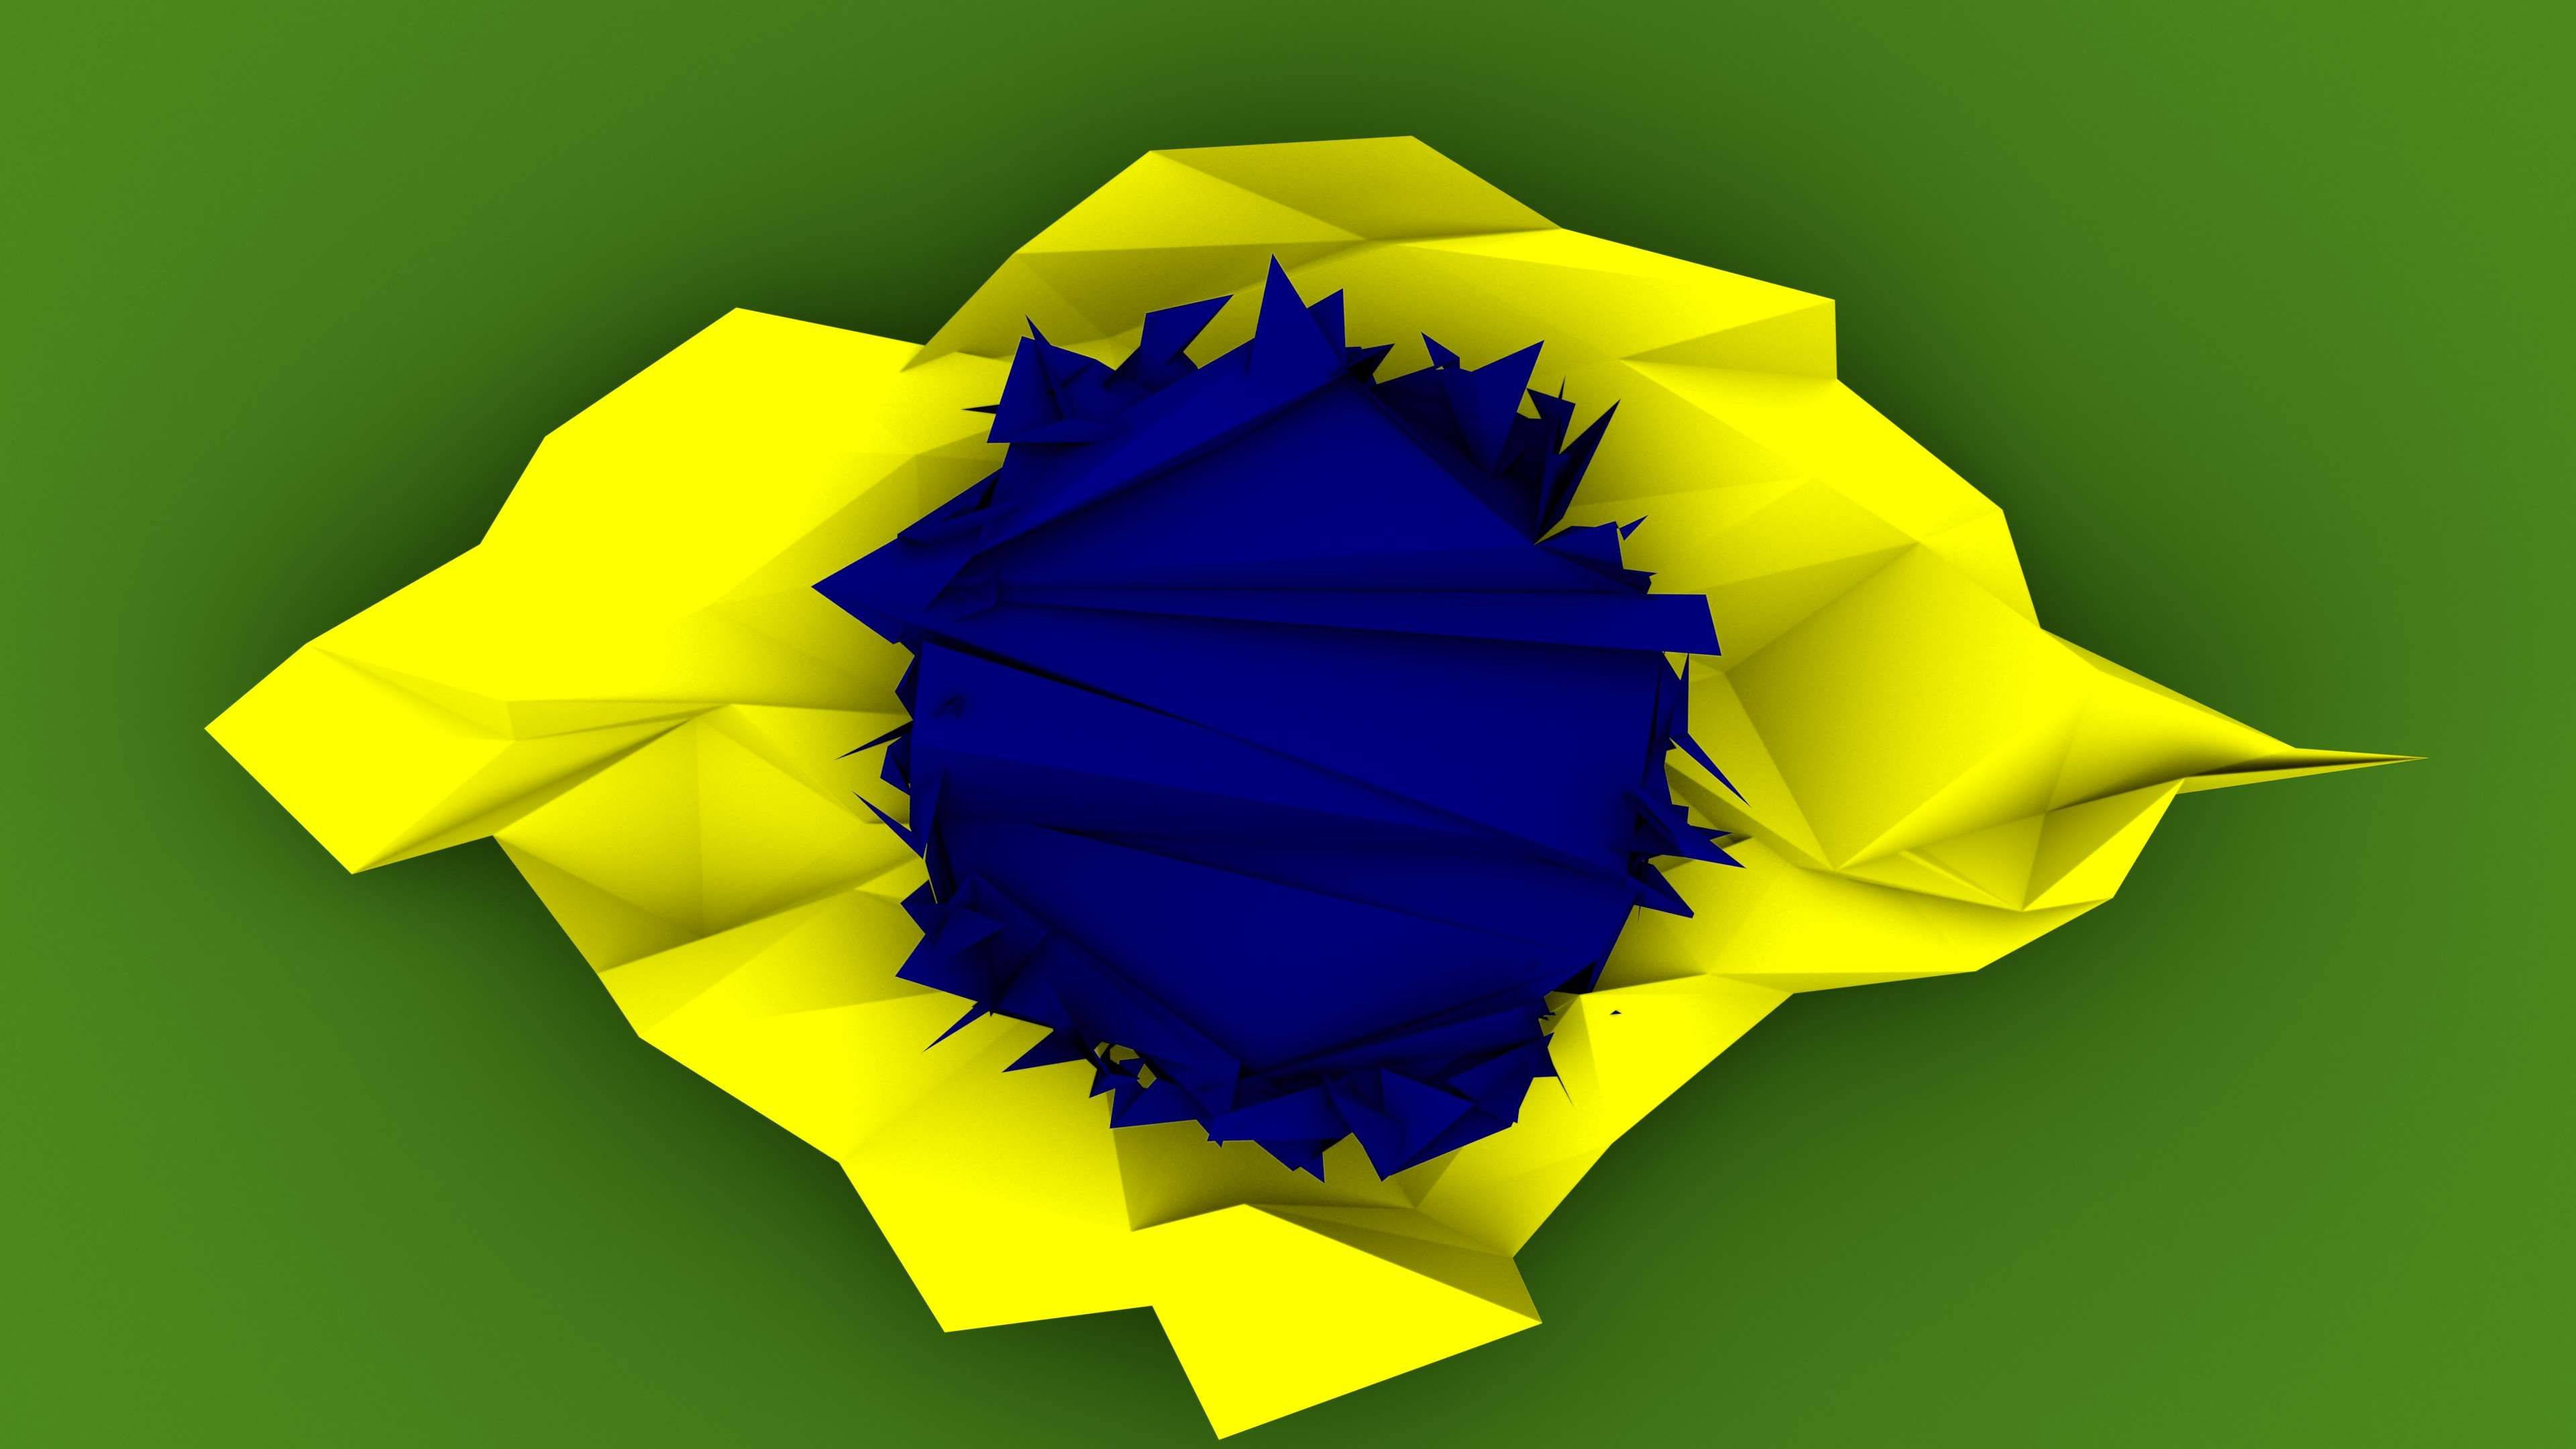 3840x2160 brazil, flag, poly 4k wallpaper JPG 216 kB